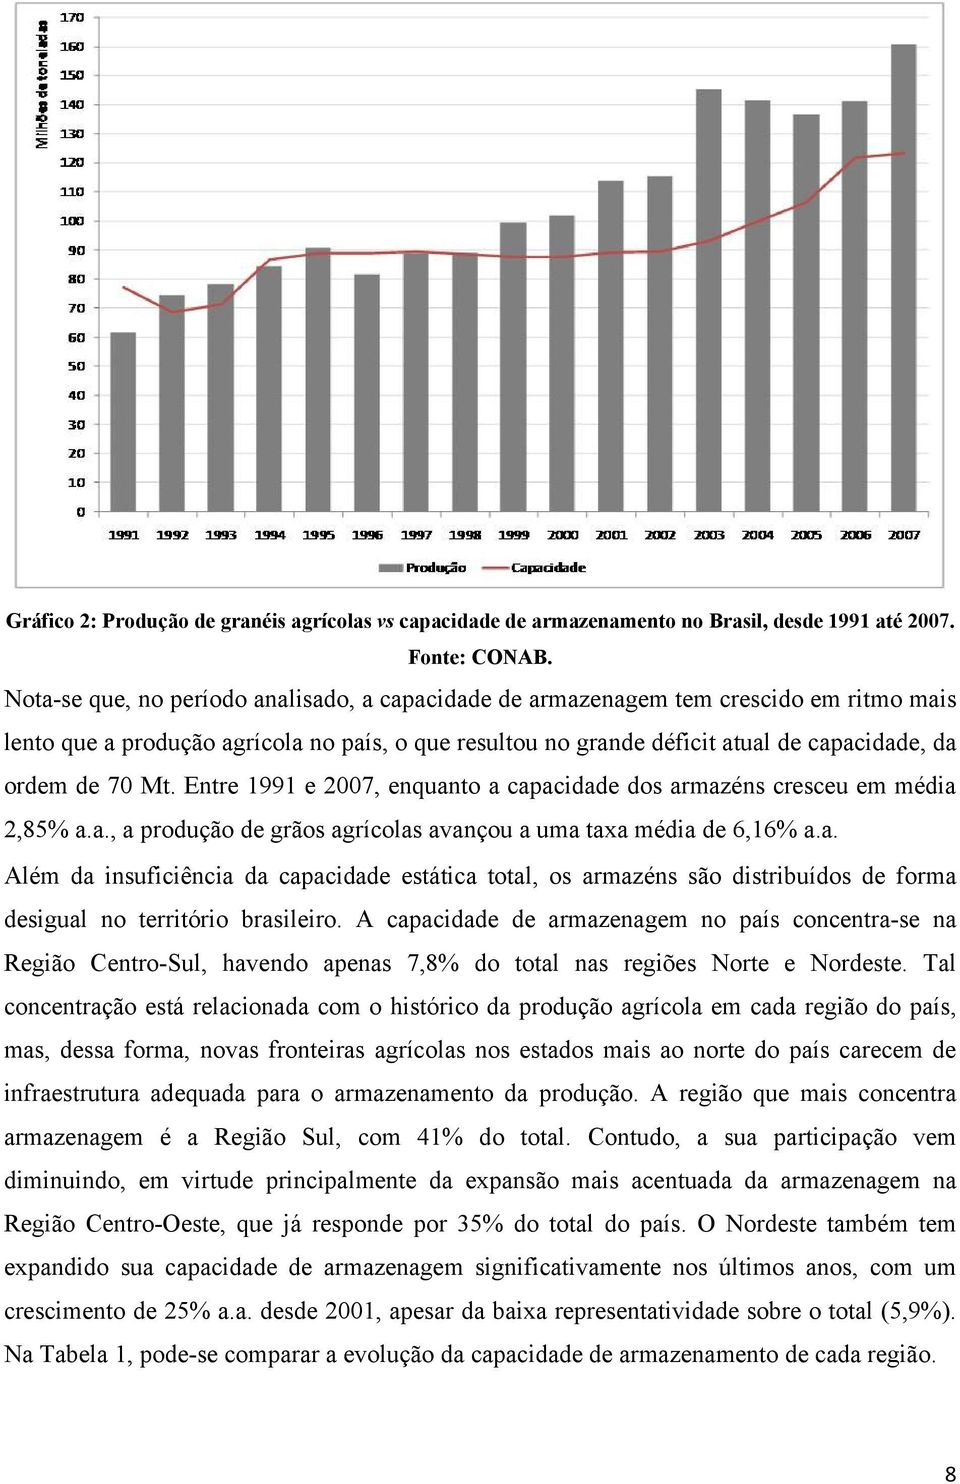 Mt. Entre 1991 e 2007, enquanto a capacidade dos armazéns cresceu em média 2,85% a.a., a produção de grãos agrícolas avançou a uma taxa média de 6,16% a.a. Além da insuficiência da capacidade estática total, os armazéns são distribuídos de forma desigual no território brasileiro.